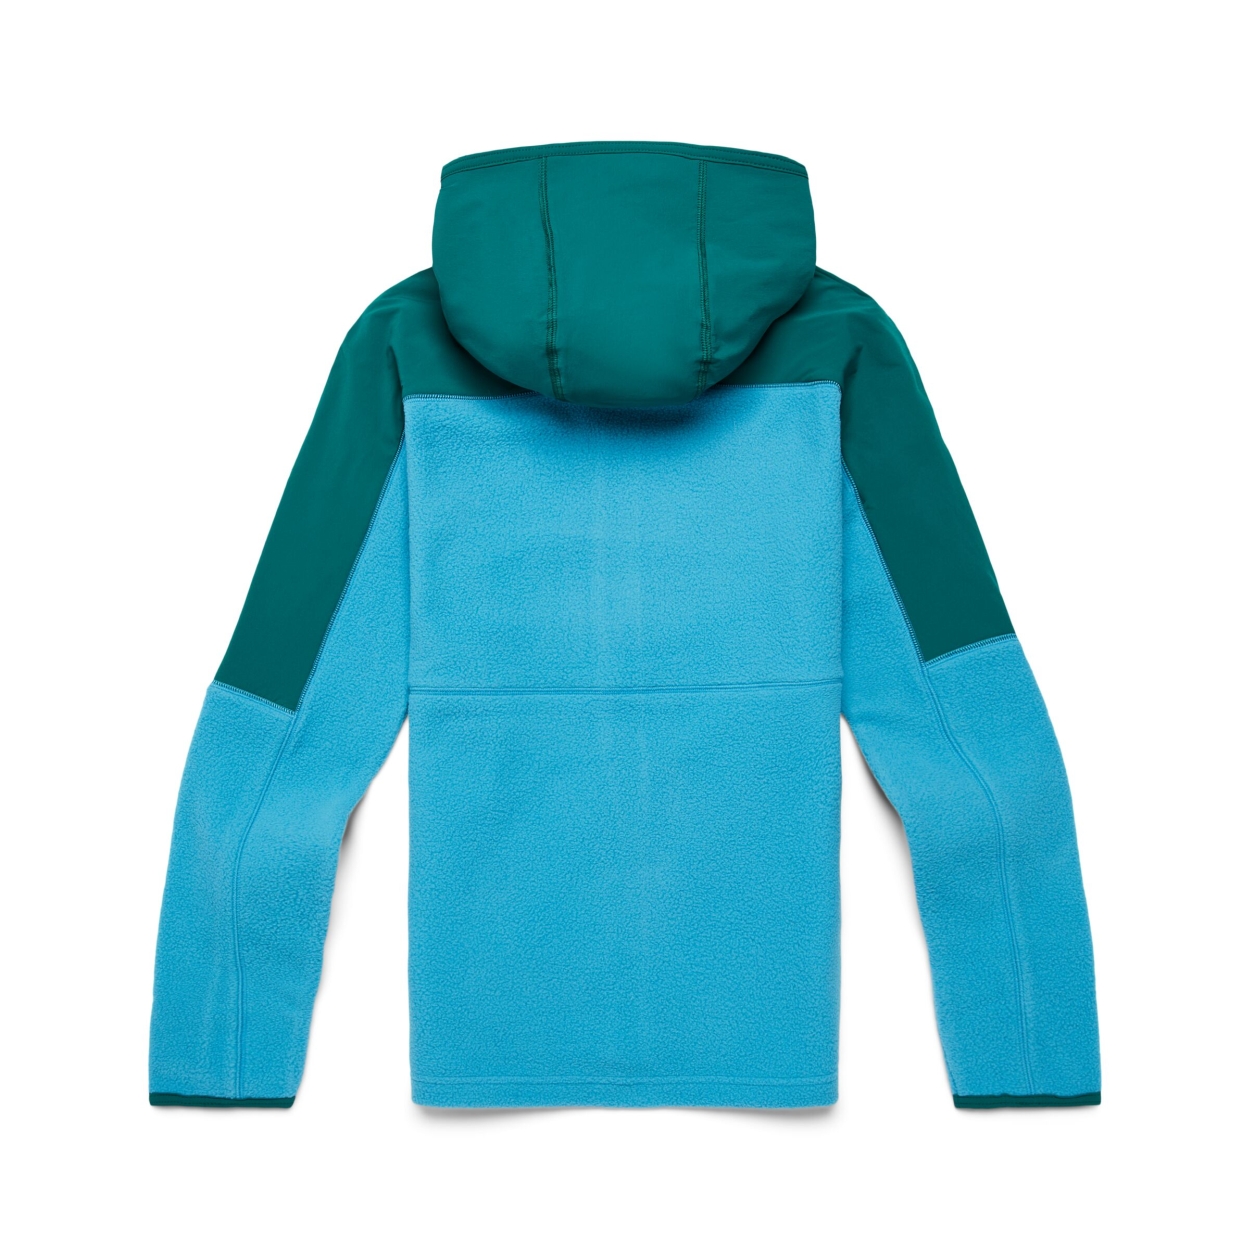 Abrazo Fleece Full-Zip Jacket wmn, greenery/poolsi